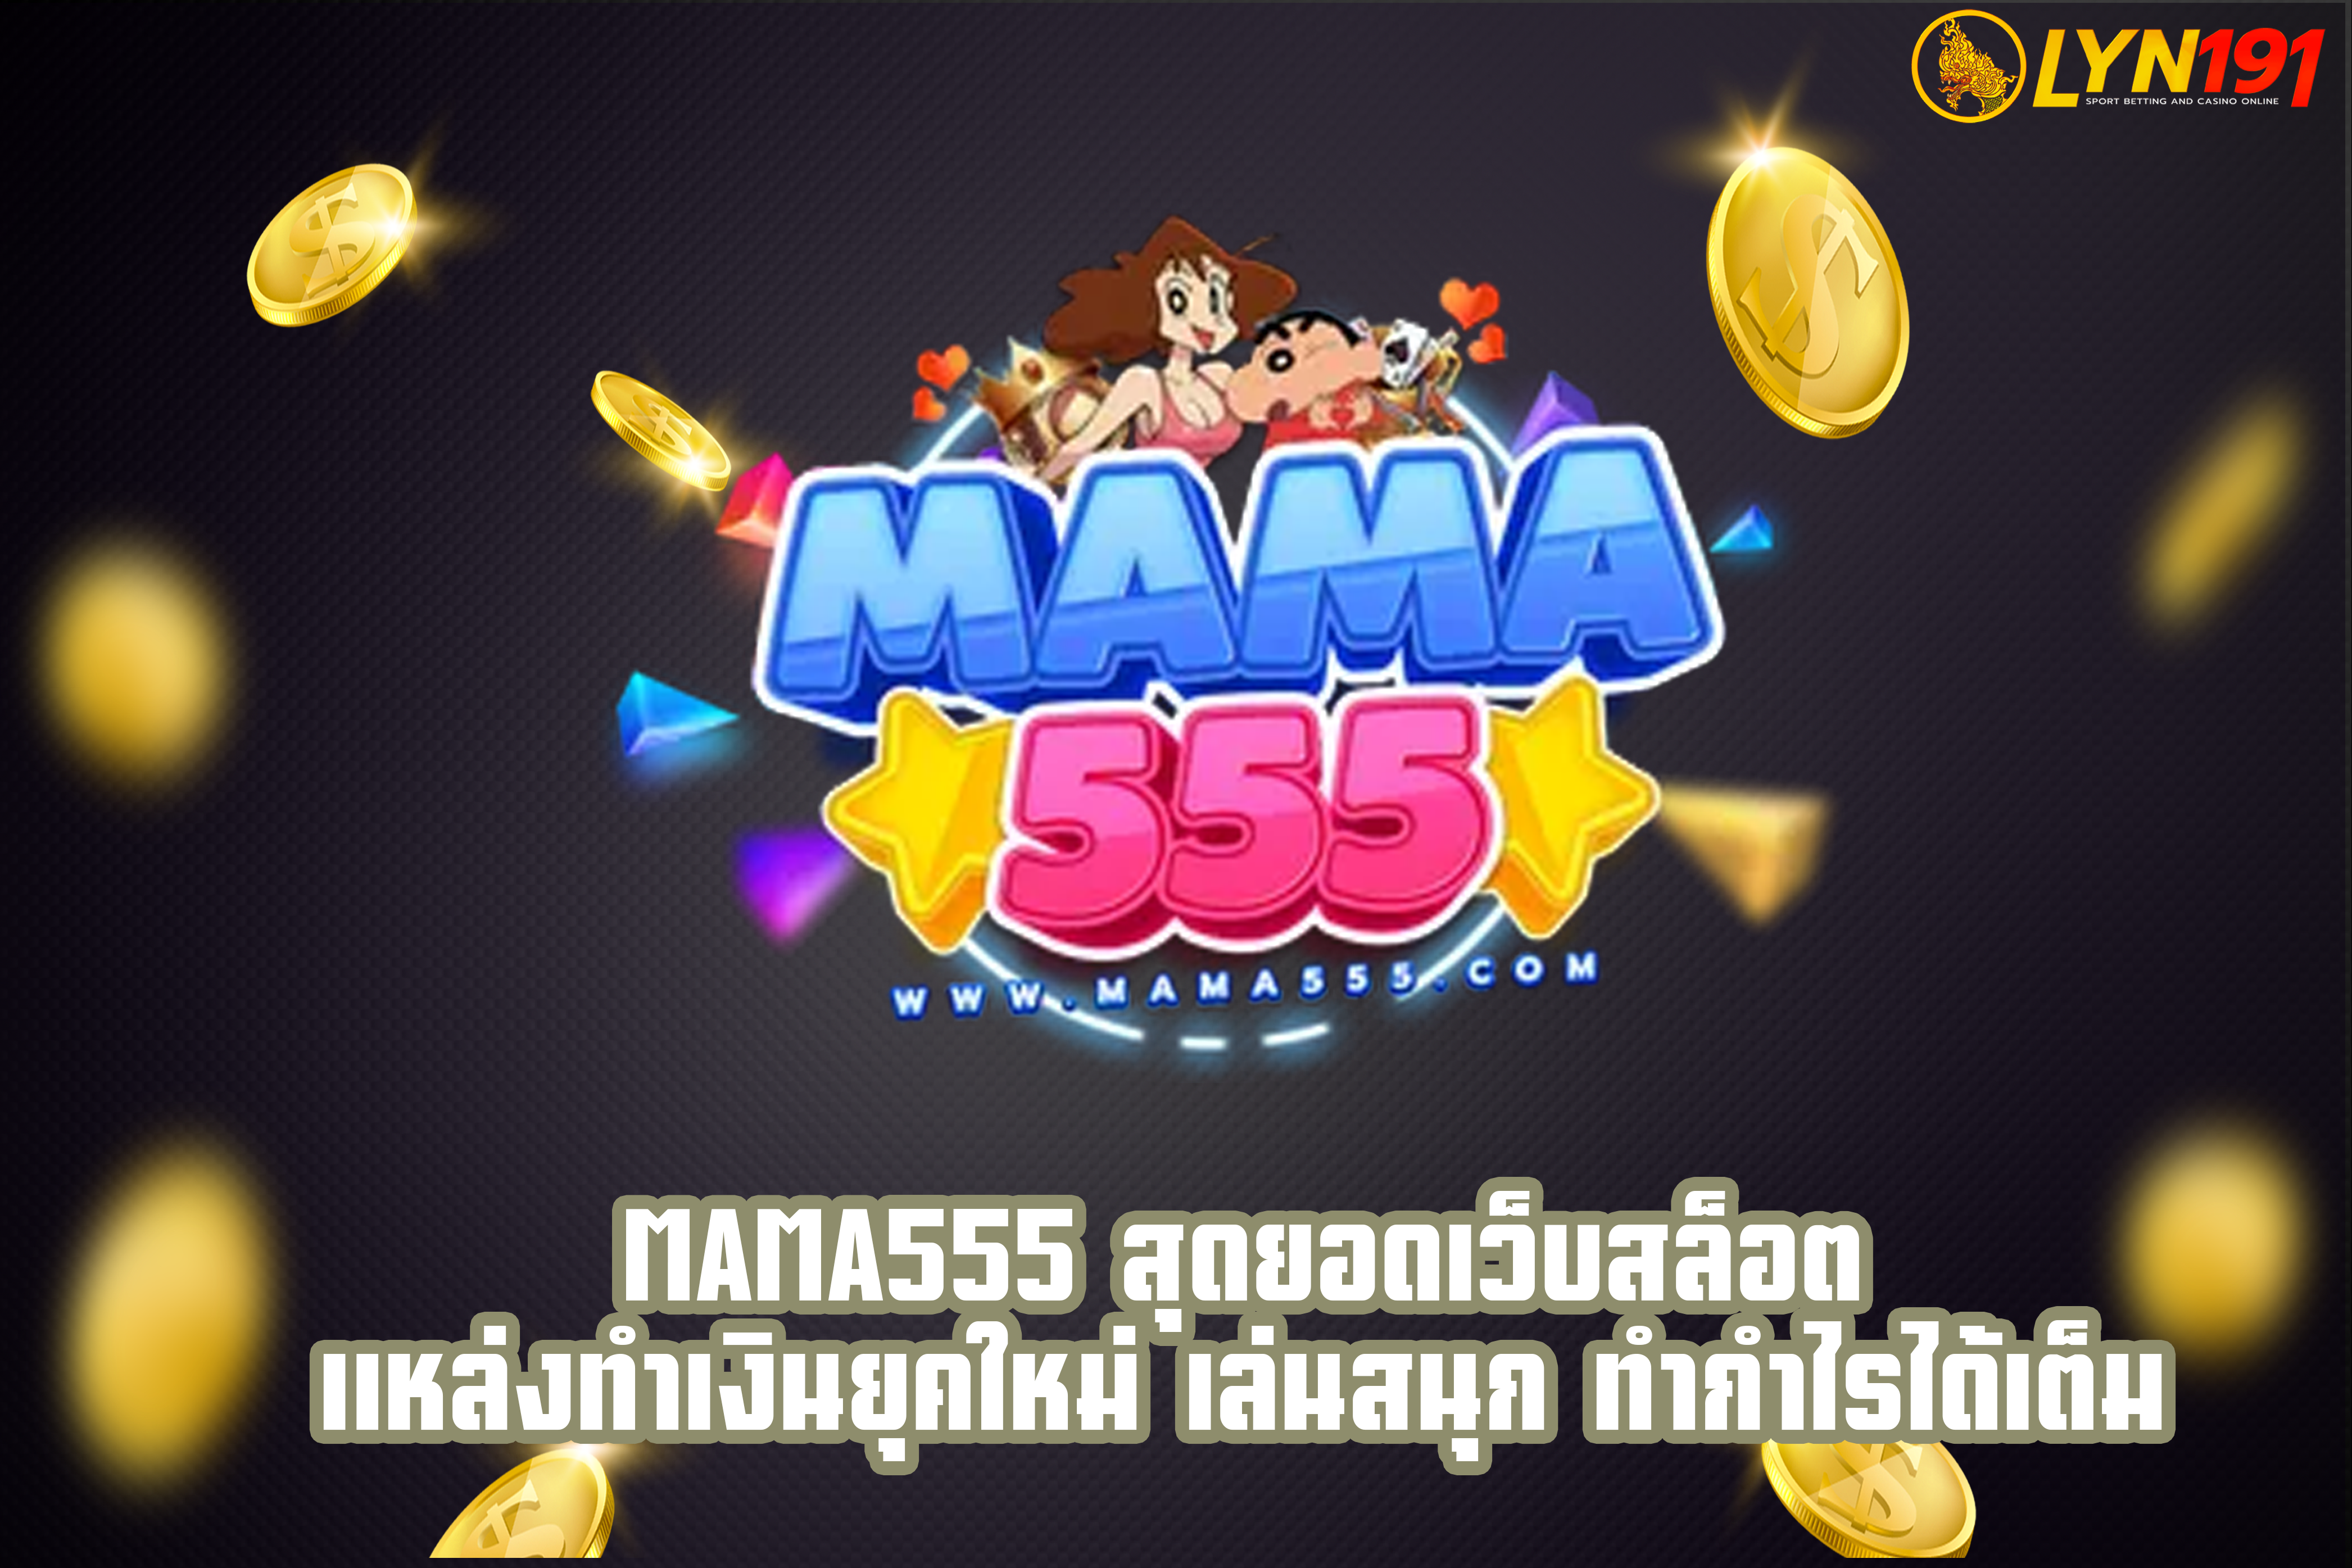 MAMA555 สุดยอดเว็บสล็อต แหล่งทำเงินยุคใหม่ เล่นสนุก ทำกำไรได้เต็ม